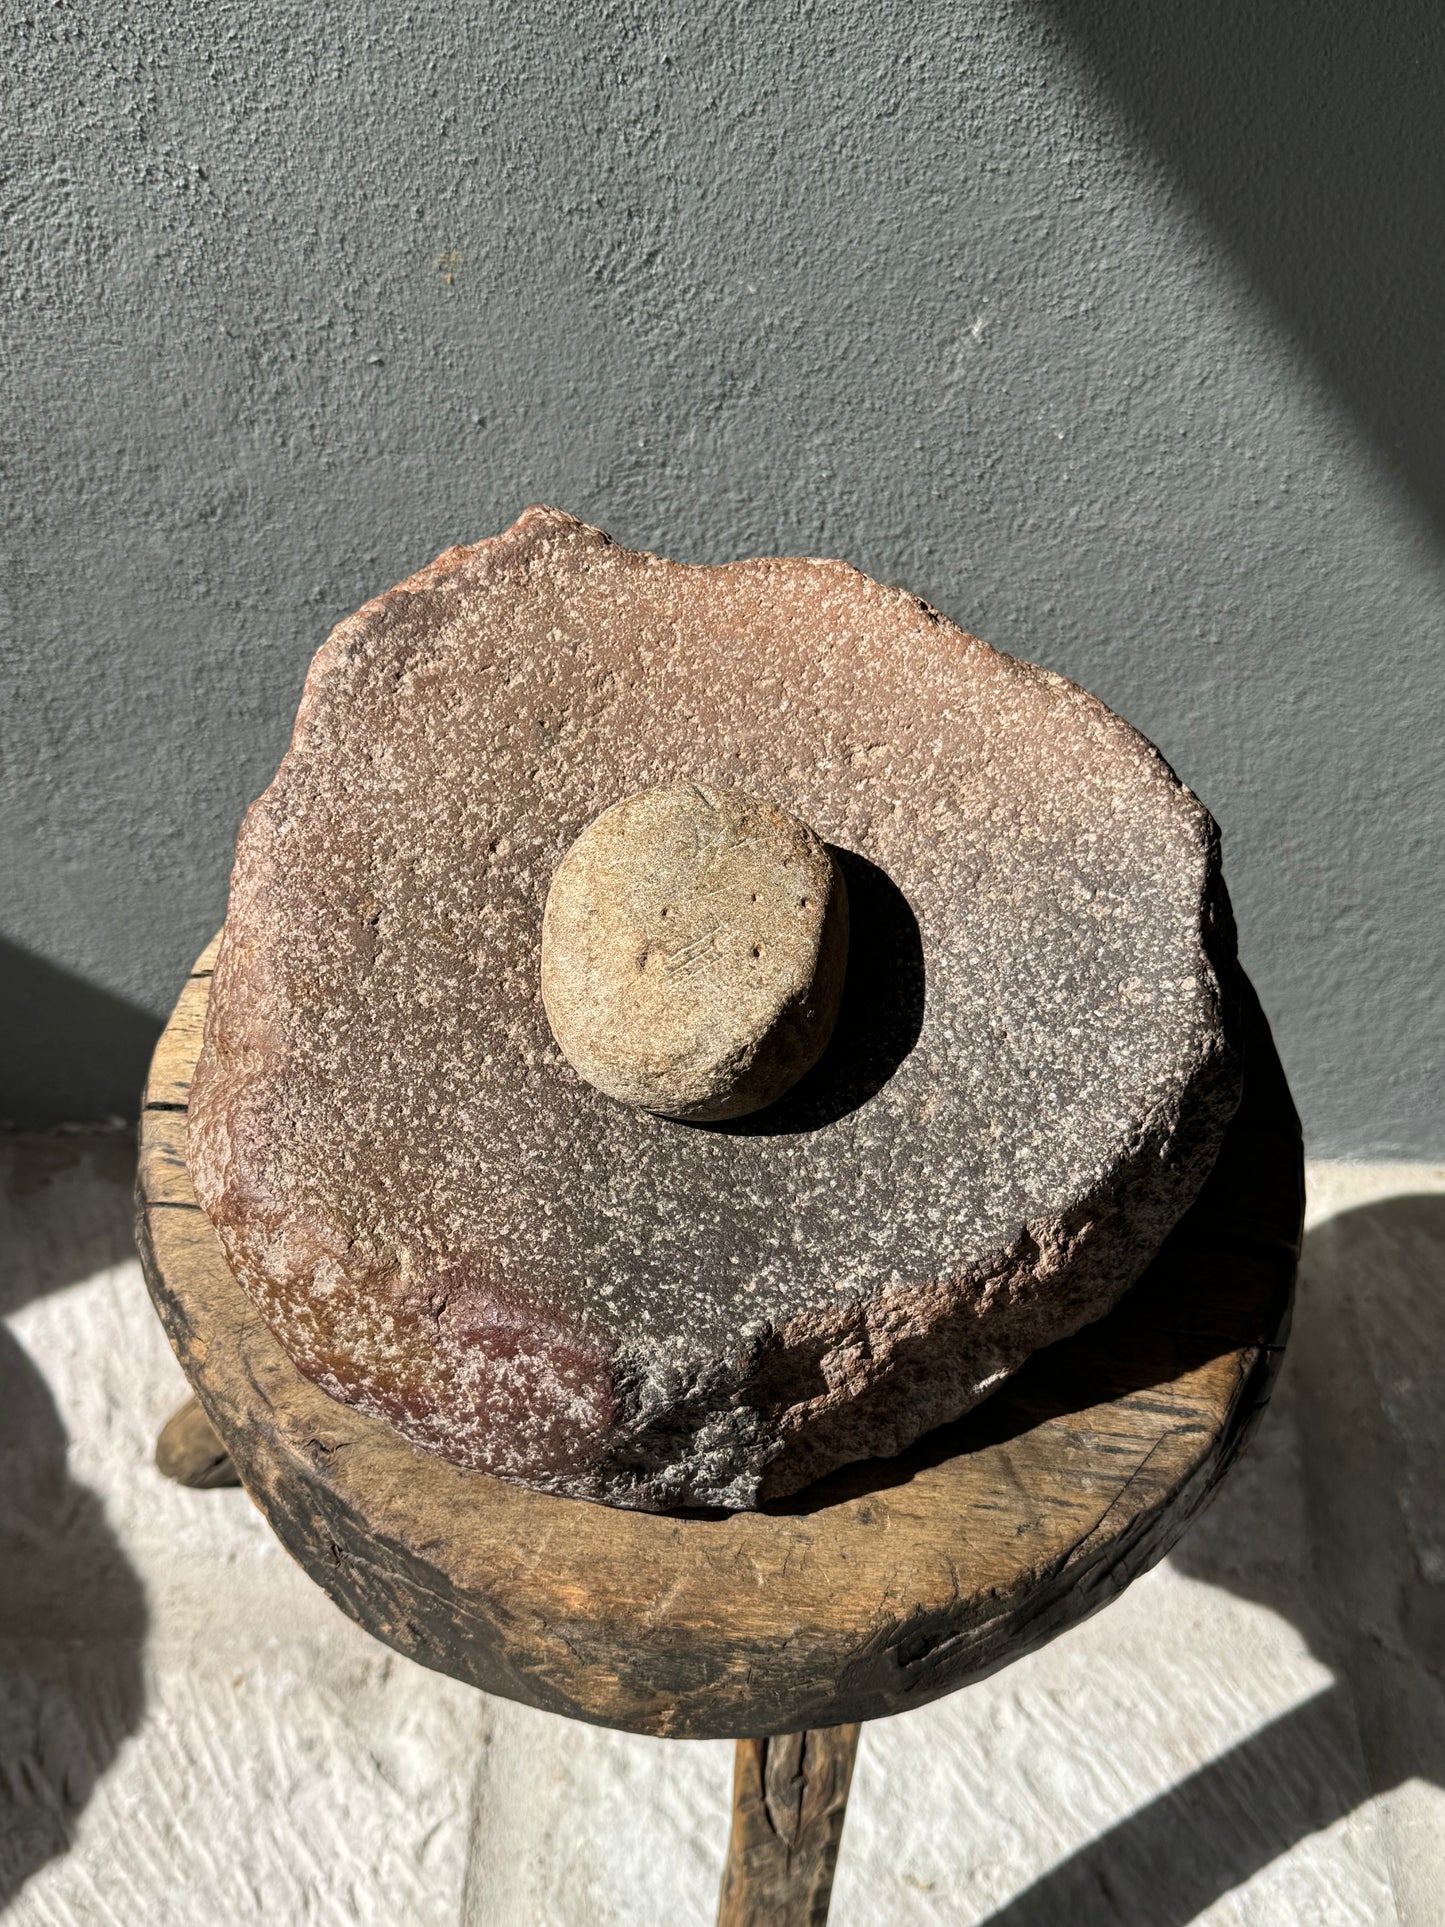 River Stone Mortar From San Luis Potosí, Mexico / Huilanche De Piedra De Río